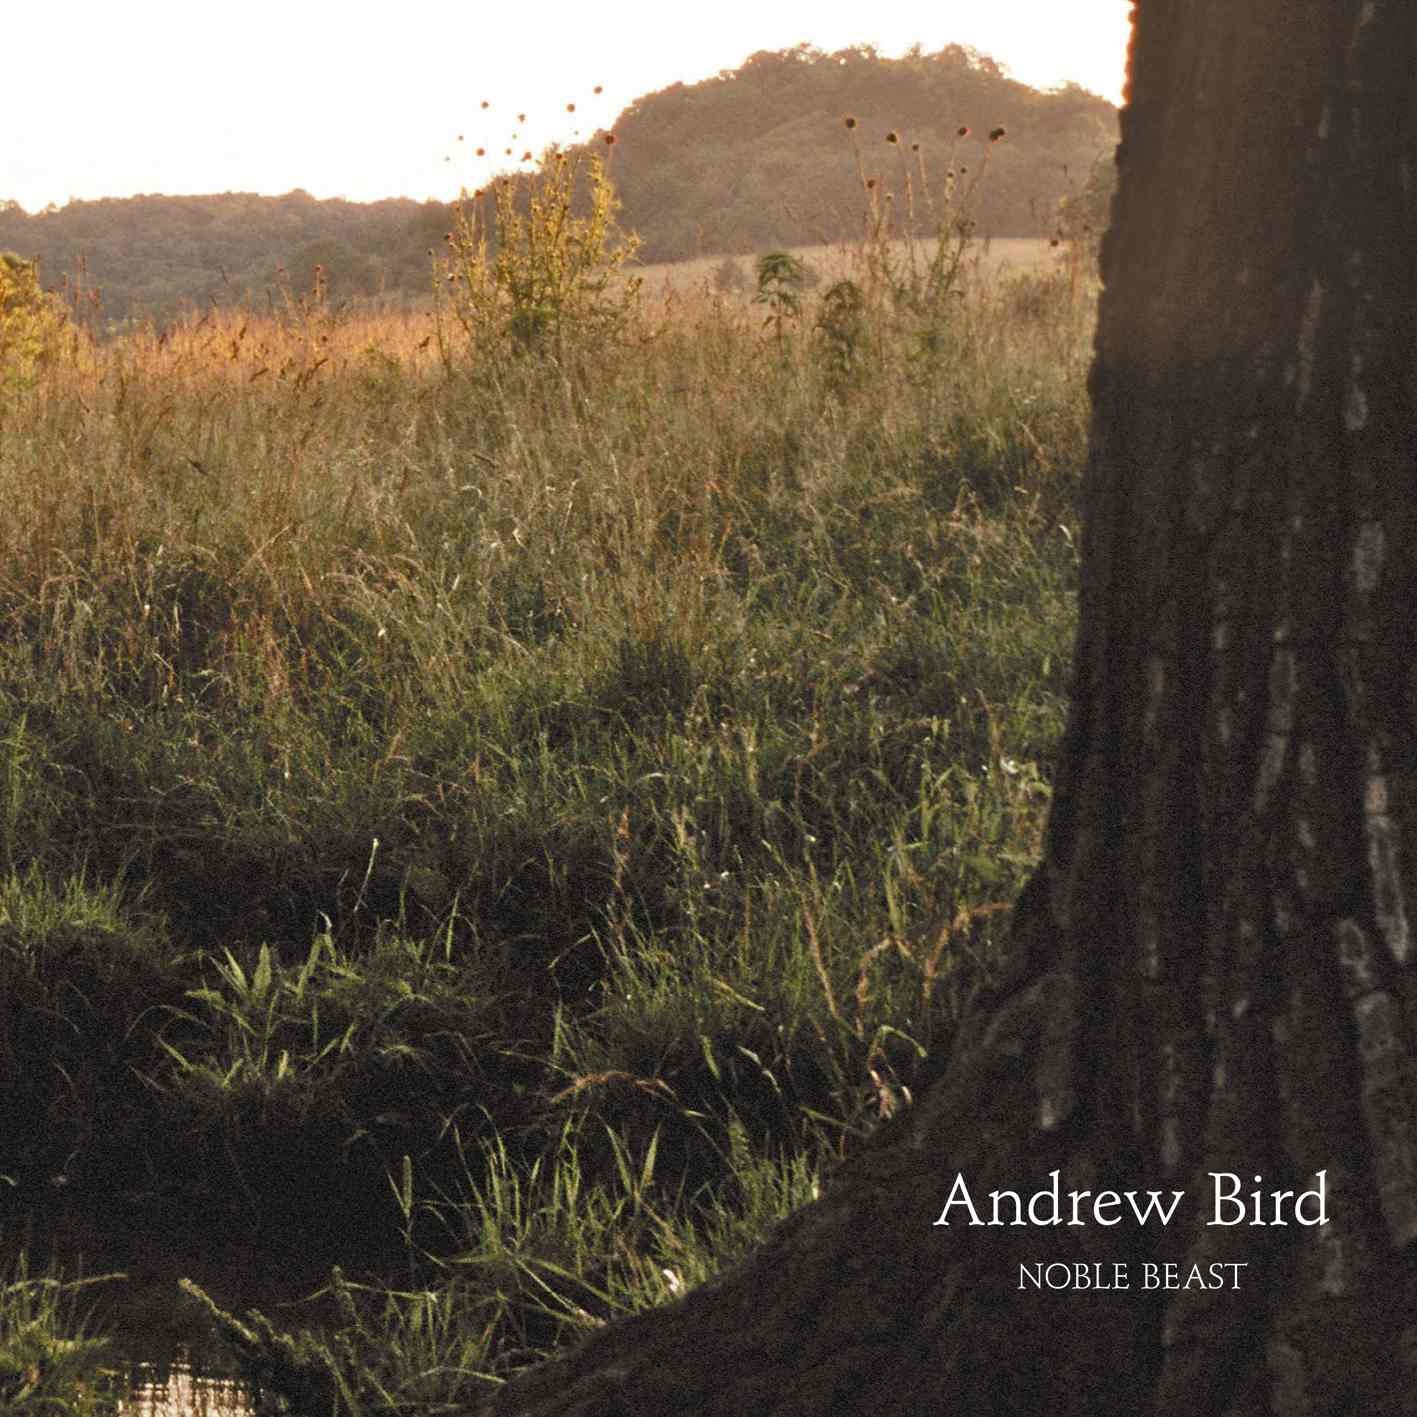 Bird, Andrew "Noble Beast"